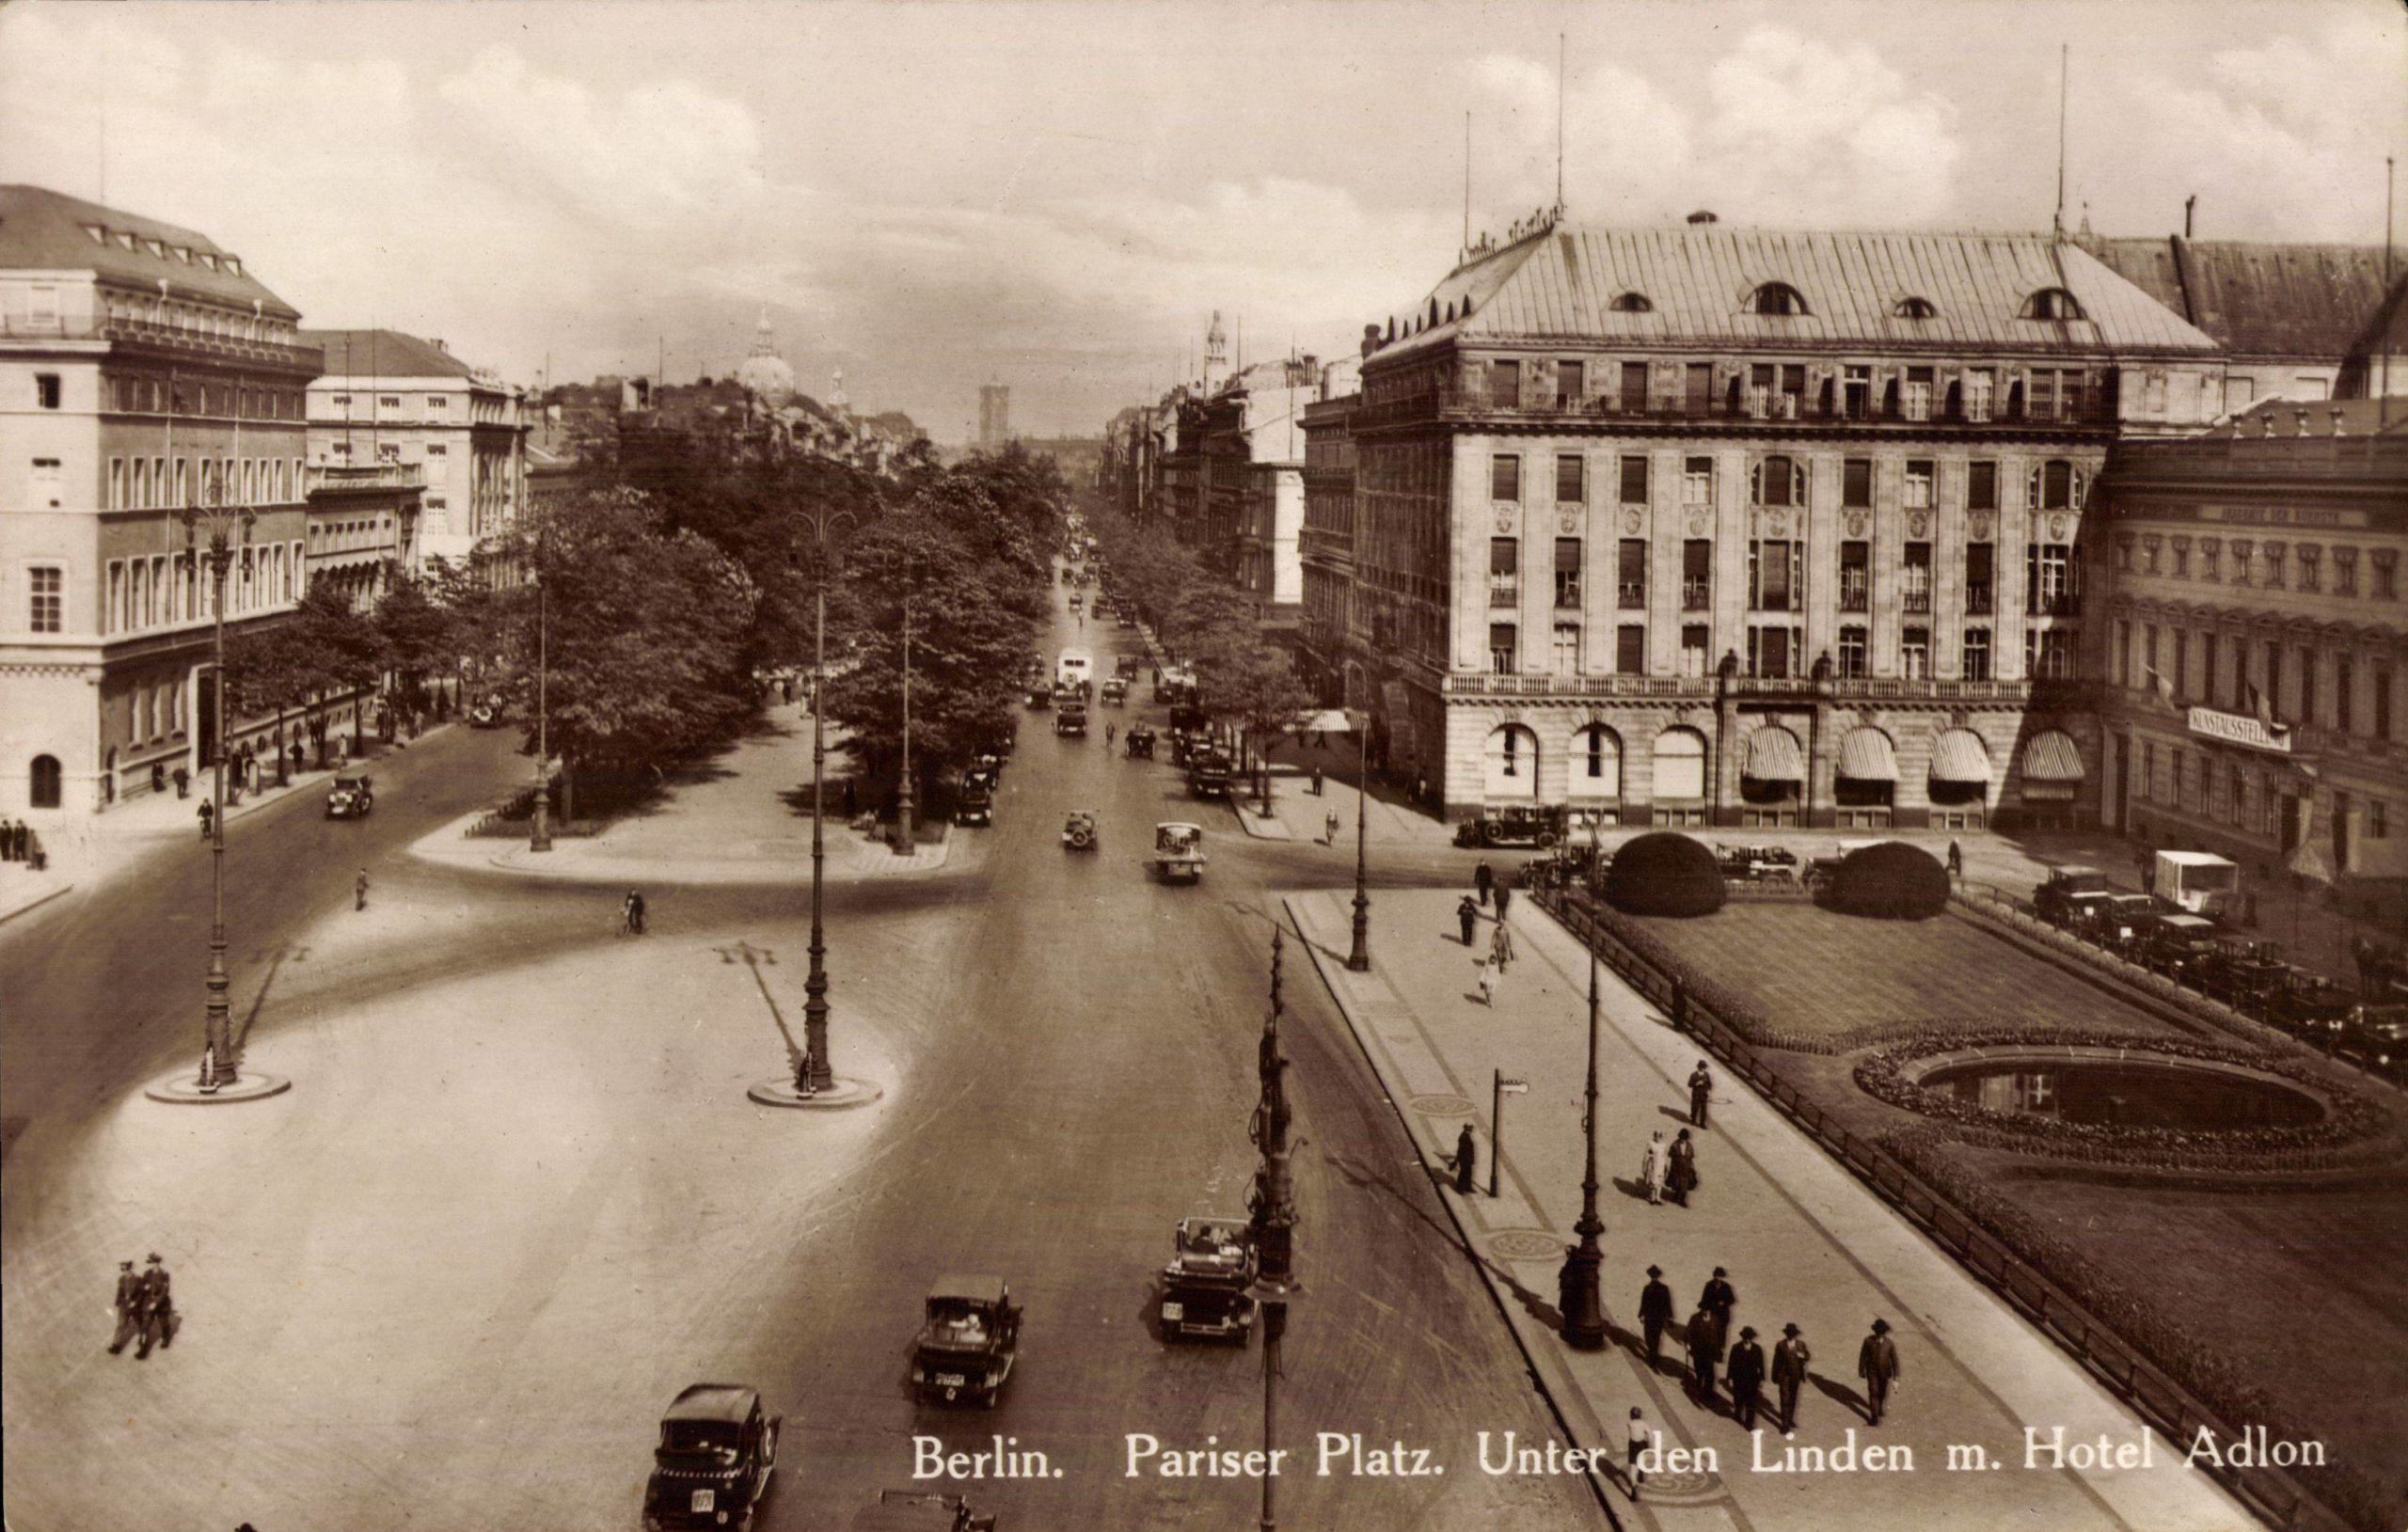 Das Hotel Adlon um 1935 am Pariser Platz. Nach der Machtübernahme der Nazis war das Adlon nicht mehr so gefragt. Der Deutschfanatismus fehlte der NS-Prominenz im Adlon, zum Glück. Foto: Imago/Arkivi